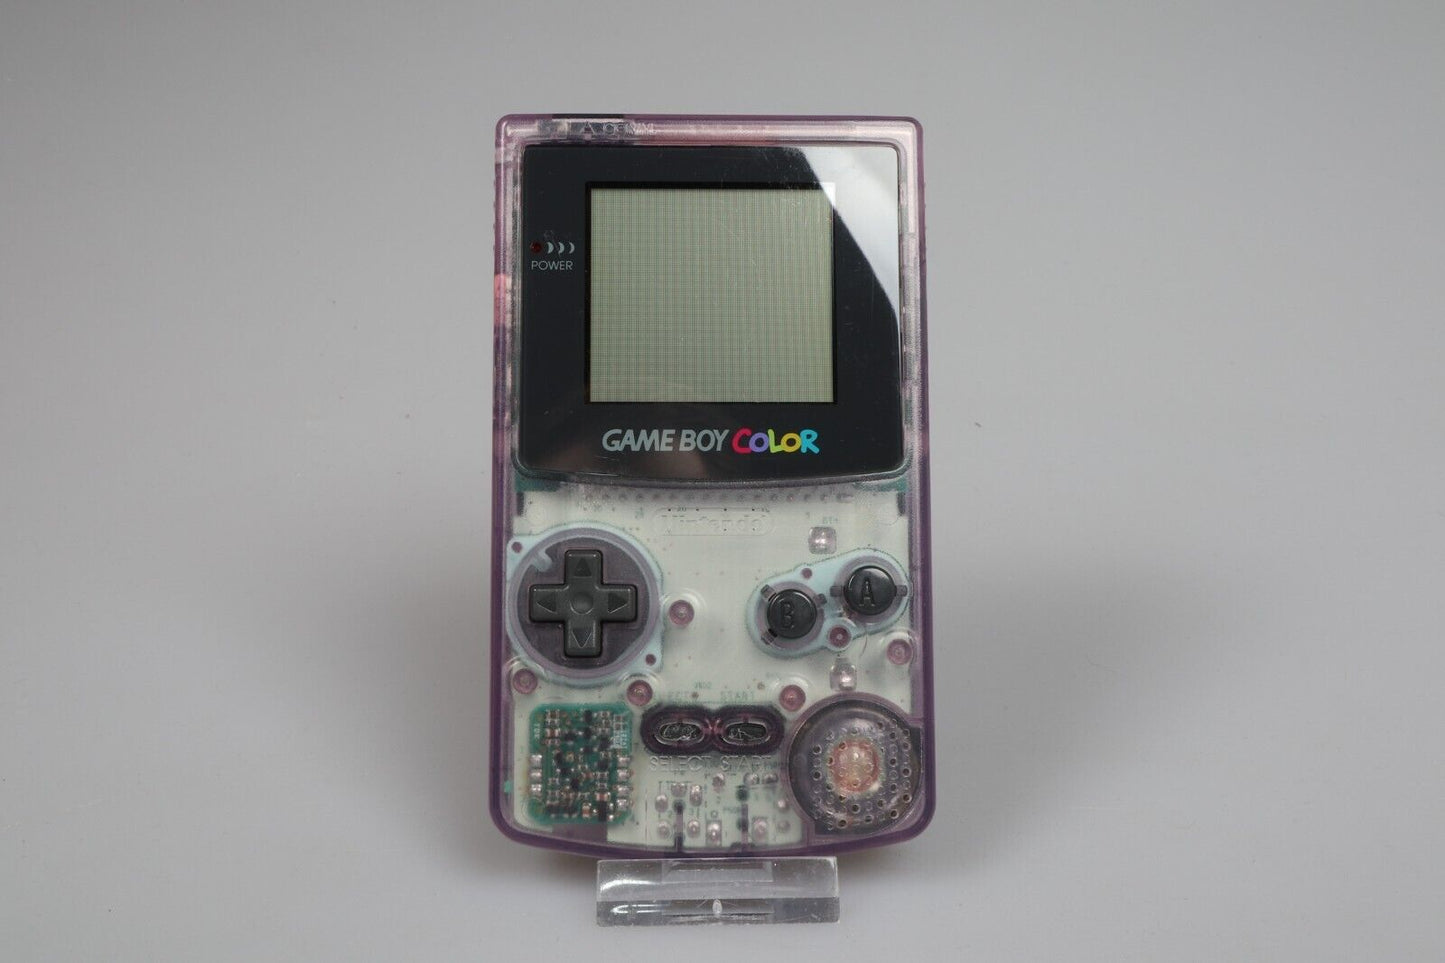 Gameboy-kleur | CGB-001 Transparante handheld | Atoom Paars 